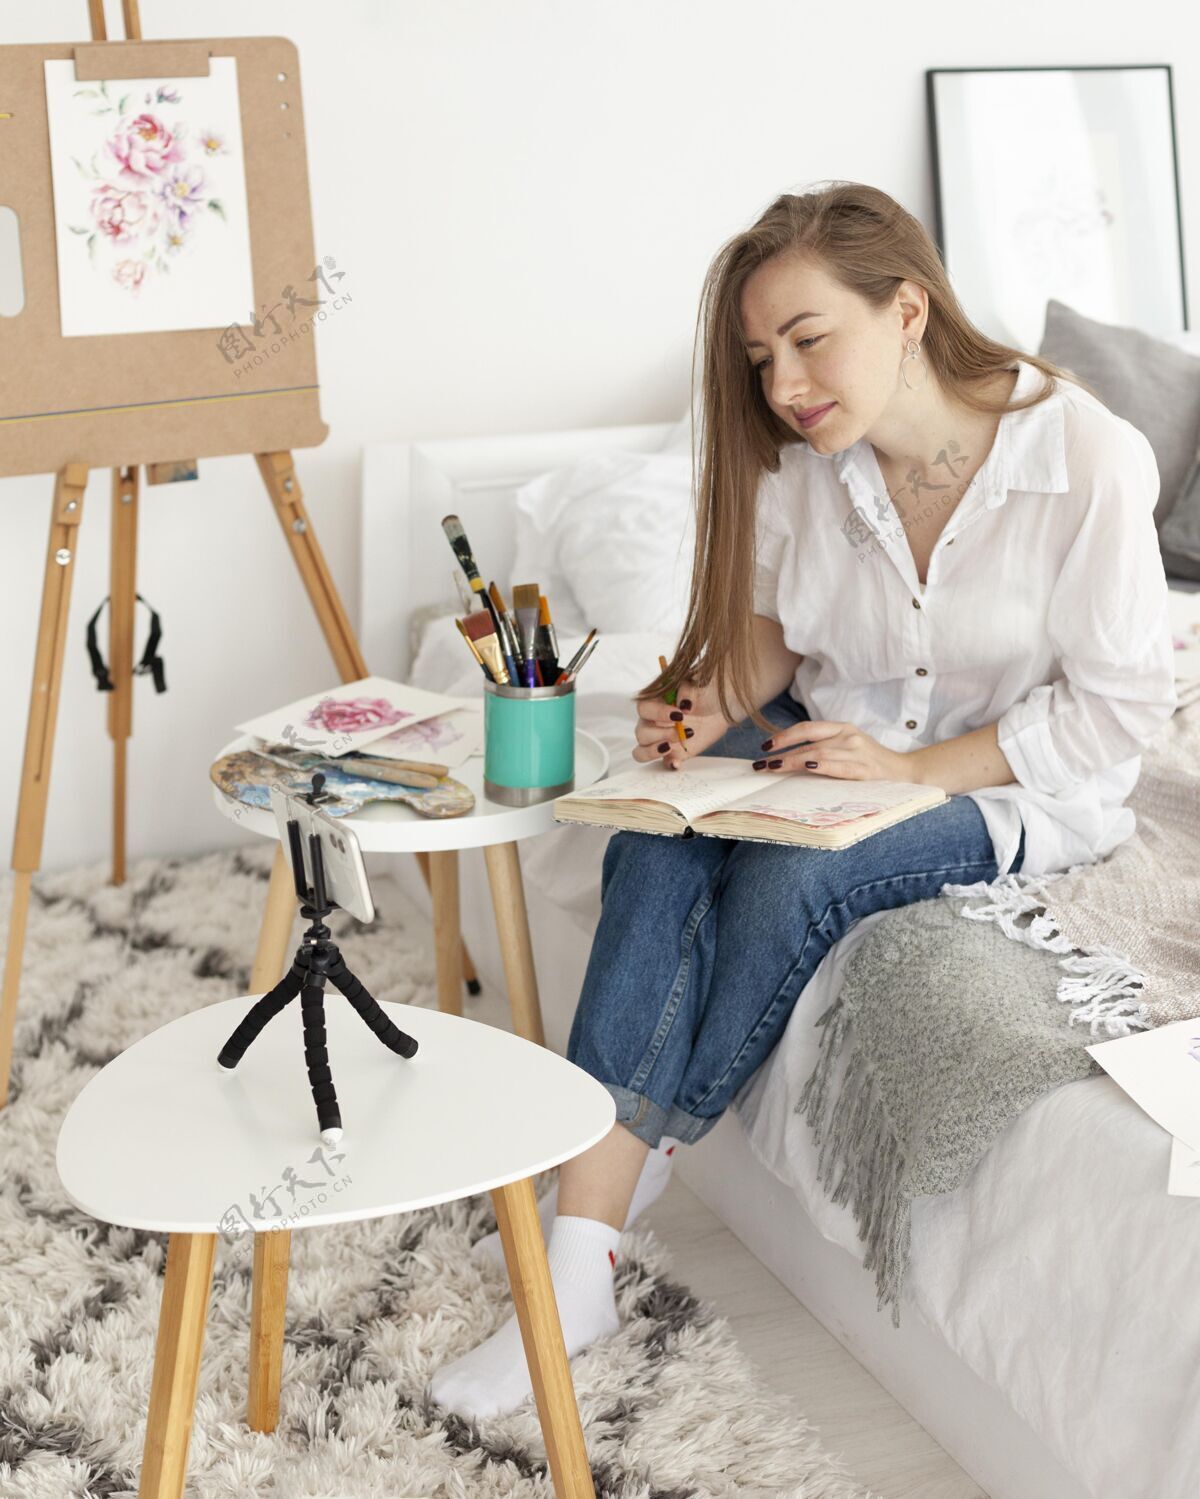 设备用手机做绘画教程的女人影响者虚拟博客女性